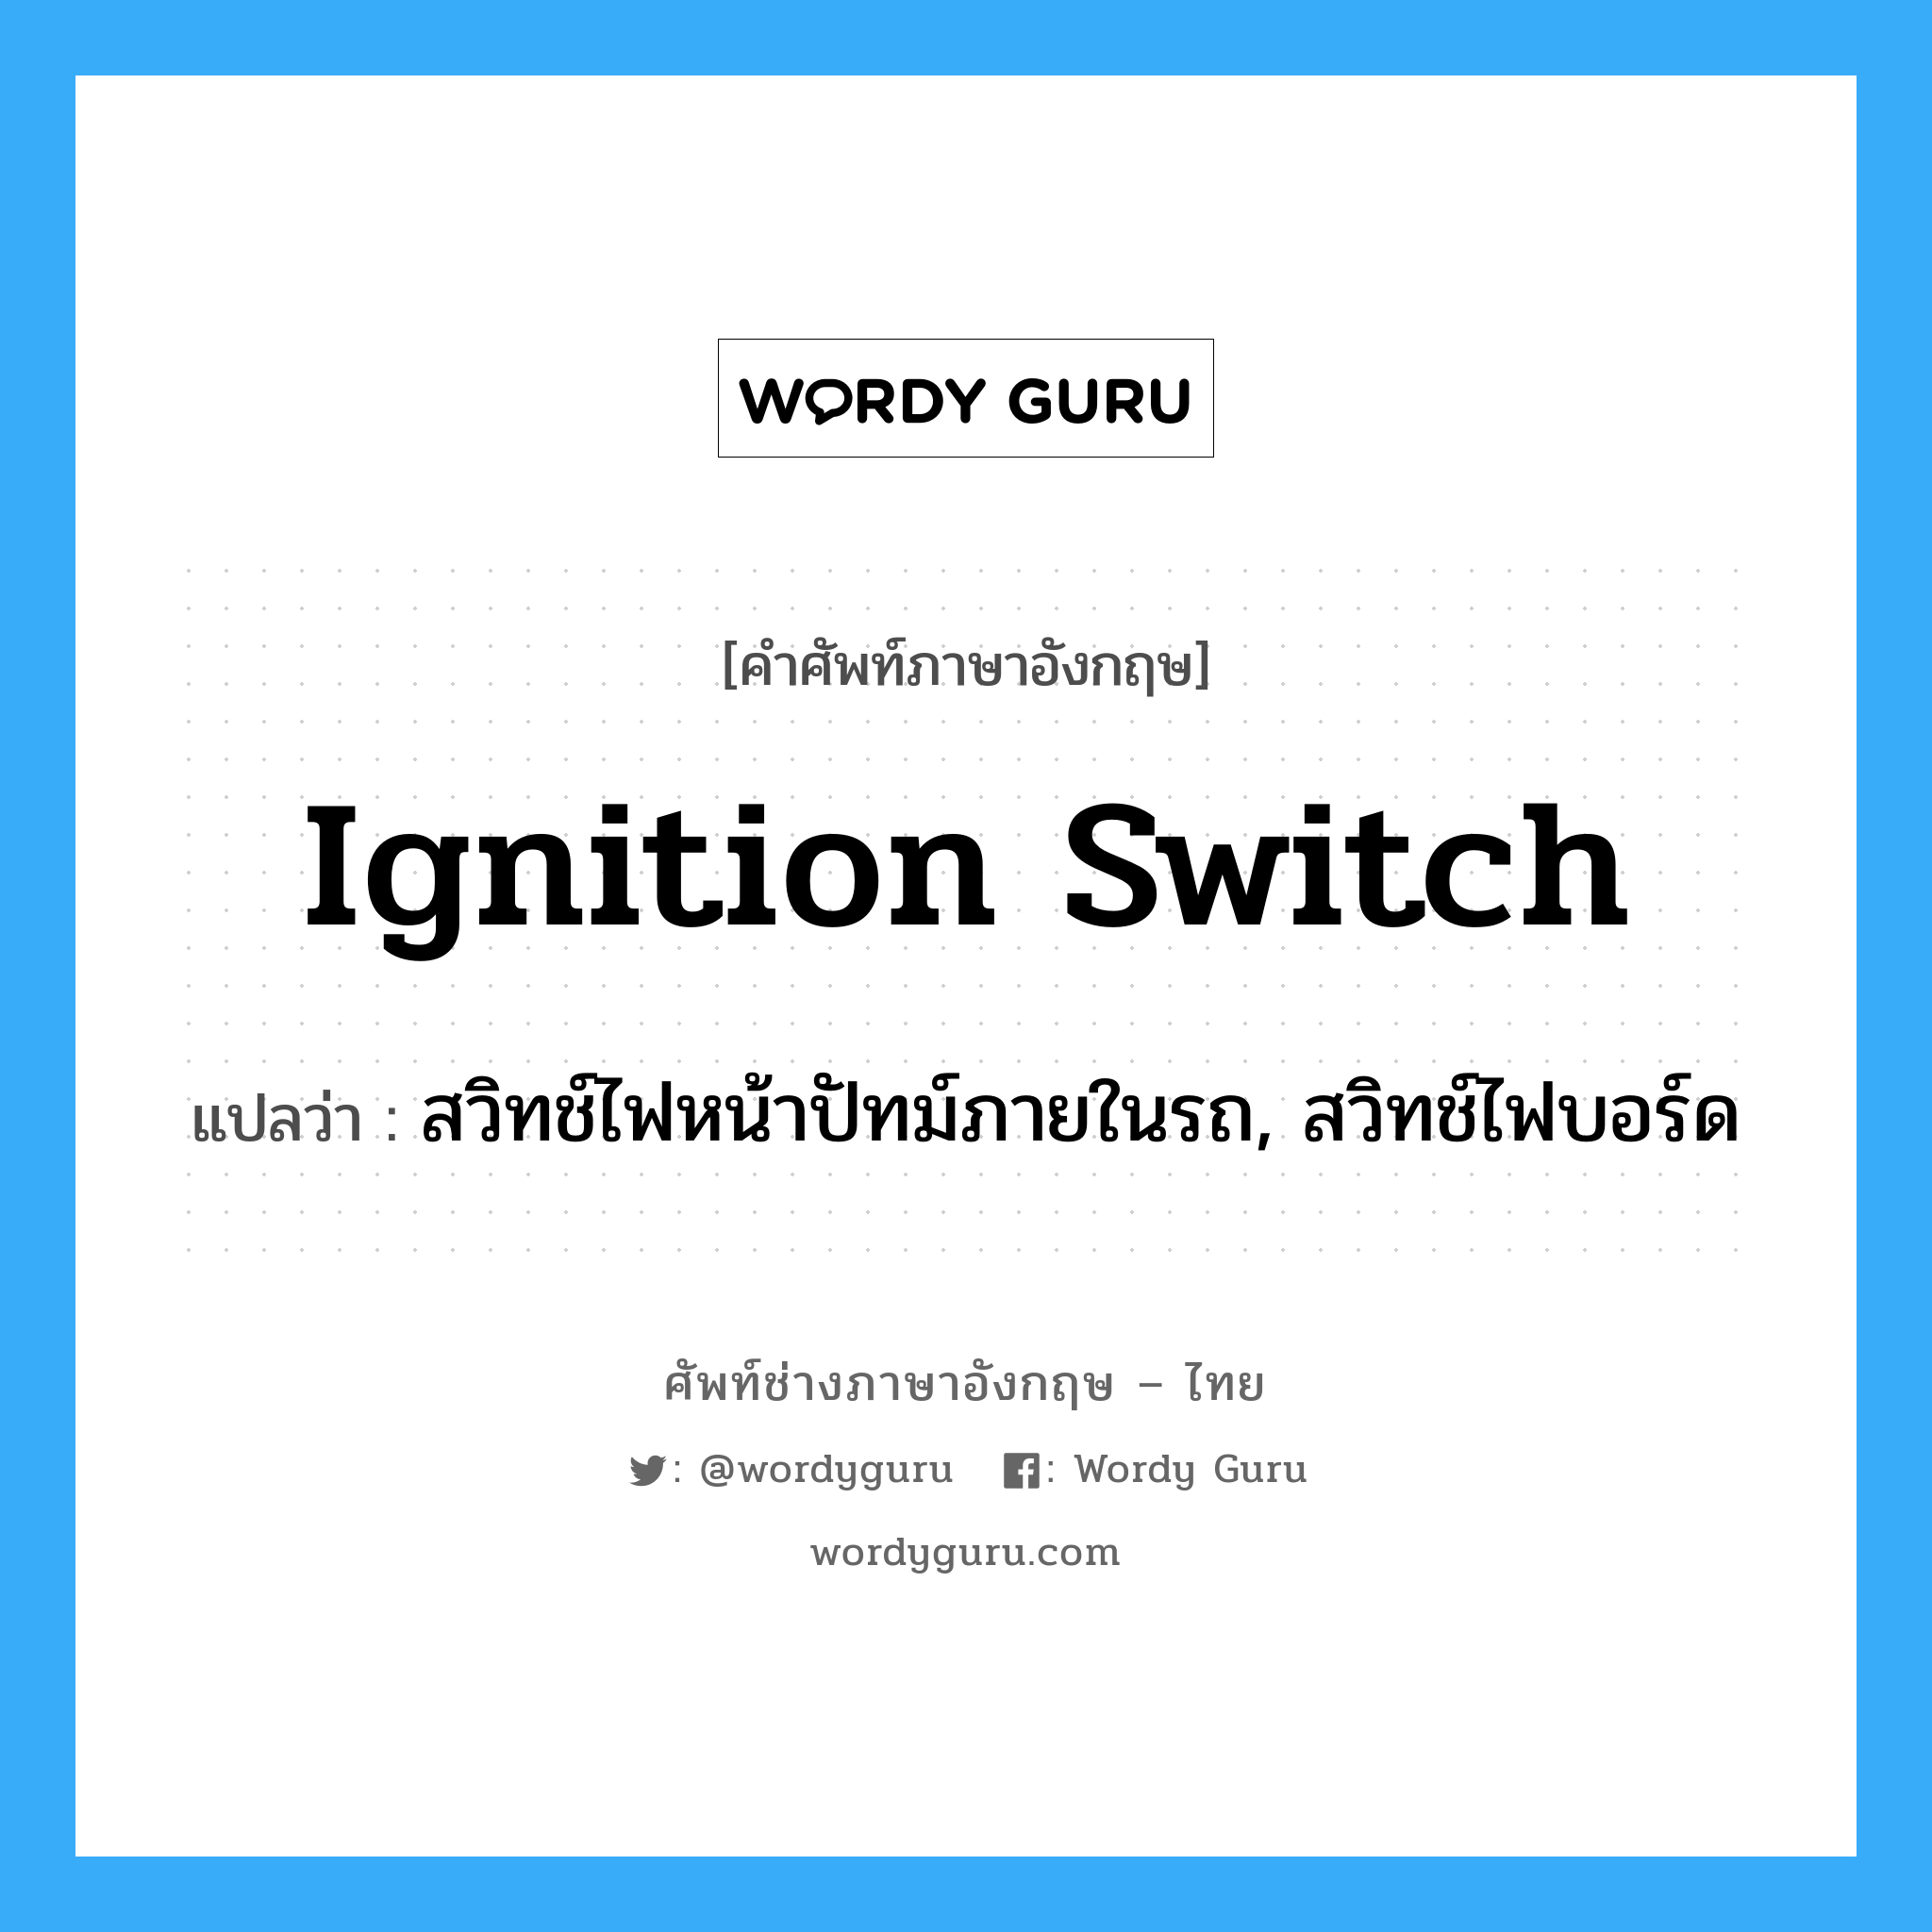 ignition switch แปลว่า?, คำศัพท์ช่างภาษาอังกฤษ - ไทย ignition switch คำศัพท์ภาษาอังกฤษ ignition switch แปลว่า สวิทช์ไฟหน้าปัทม์ภายในรถ, สวิทช์ไฟบอร์ด